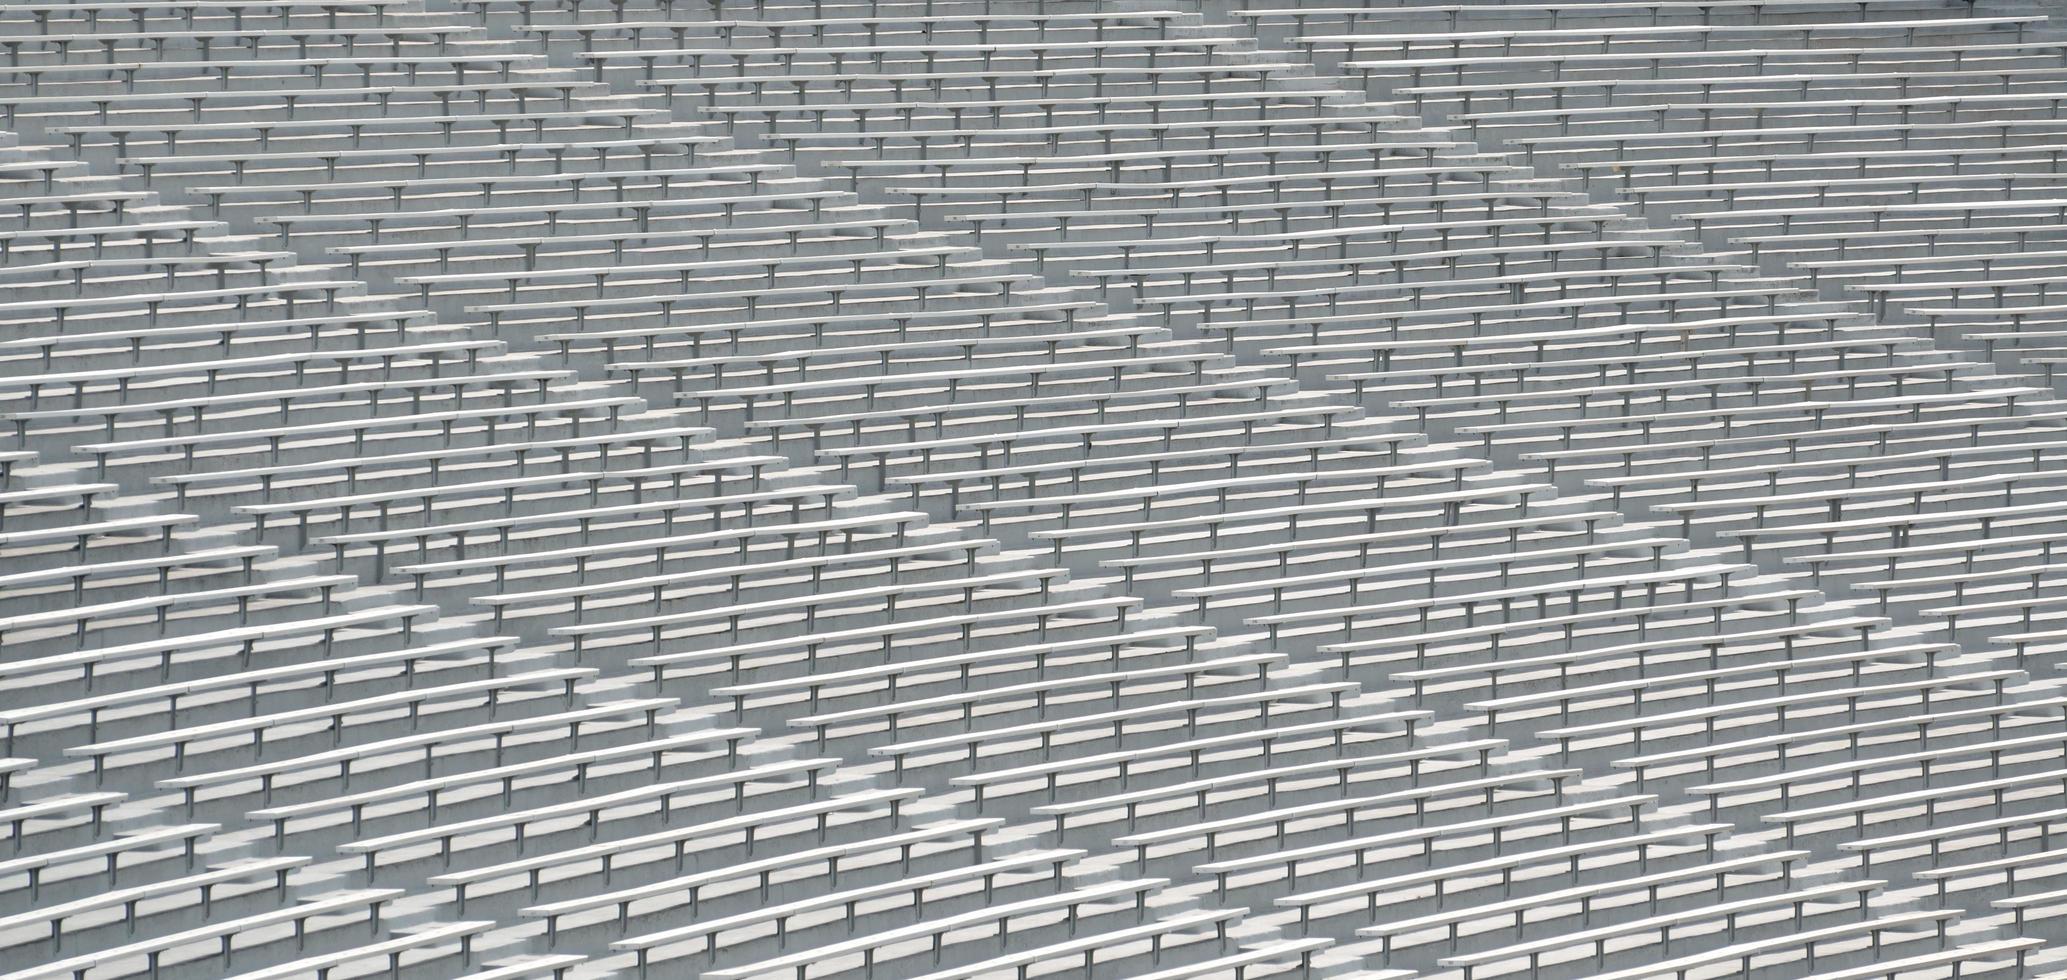 Seats in an empty stadium photo